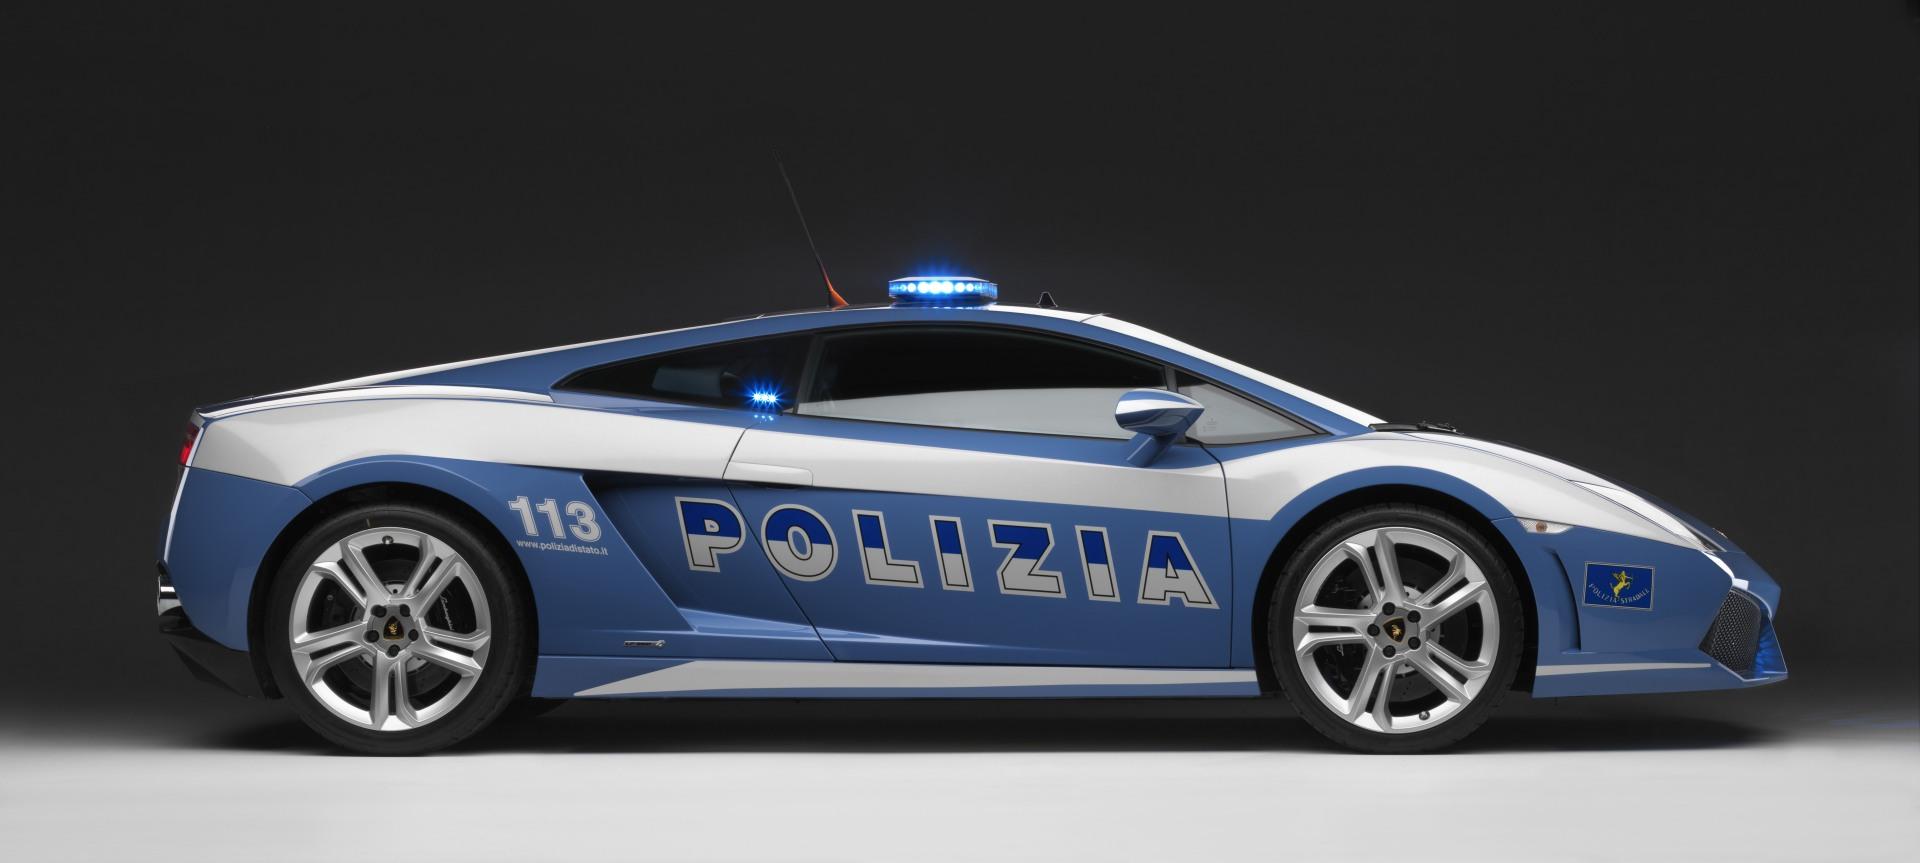 2008 Lamborghini Gallardo LP560-4 Polizia